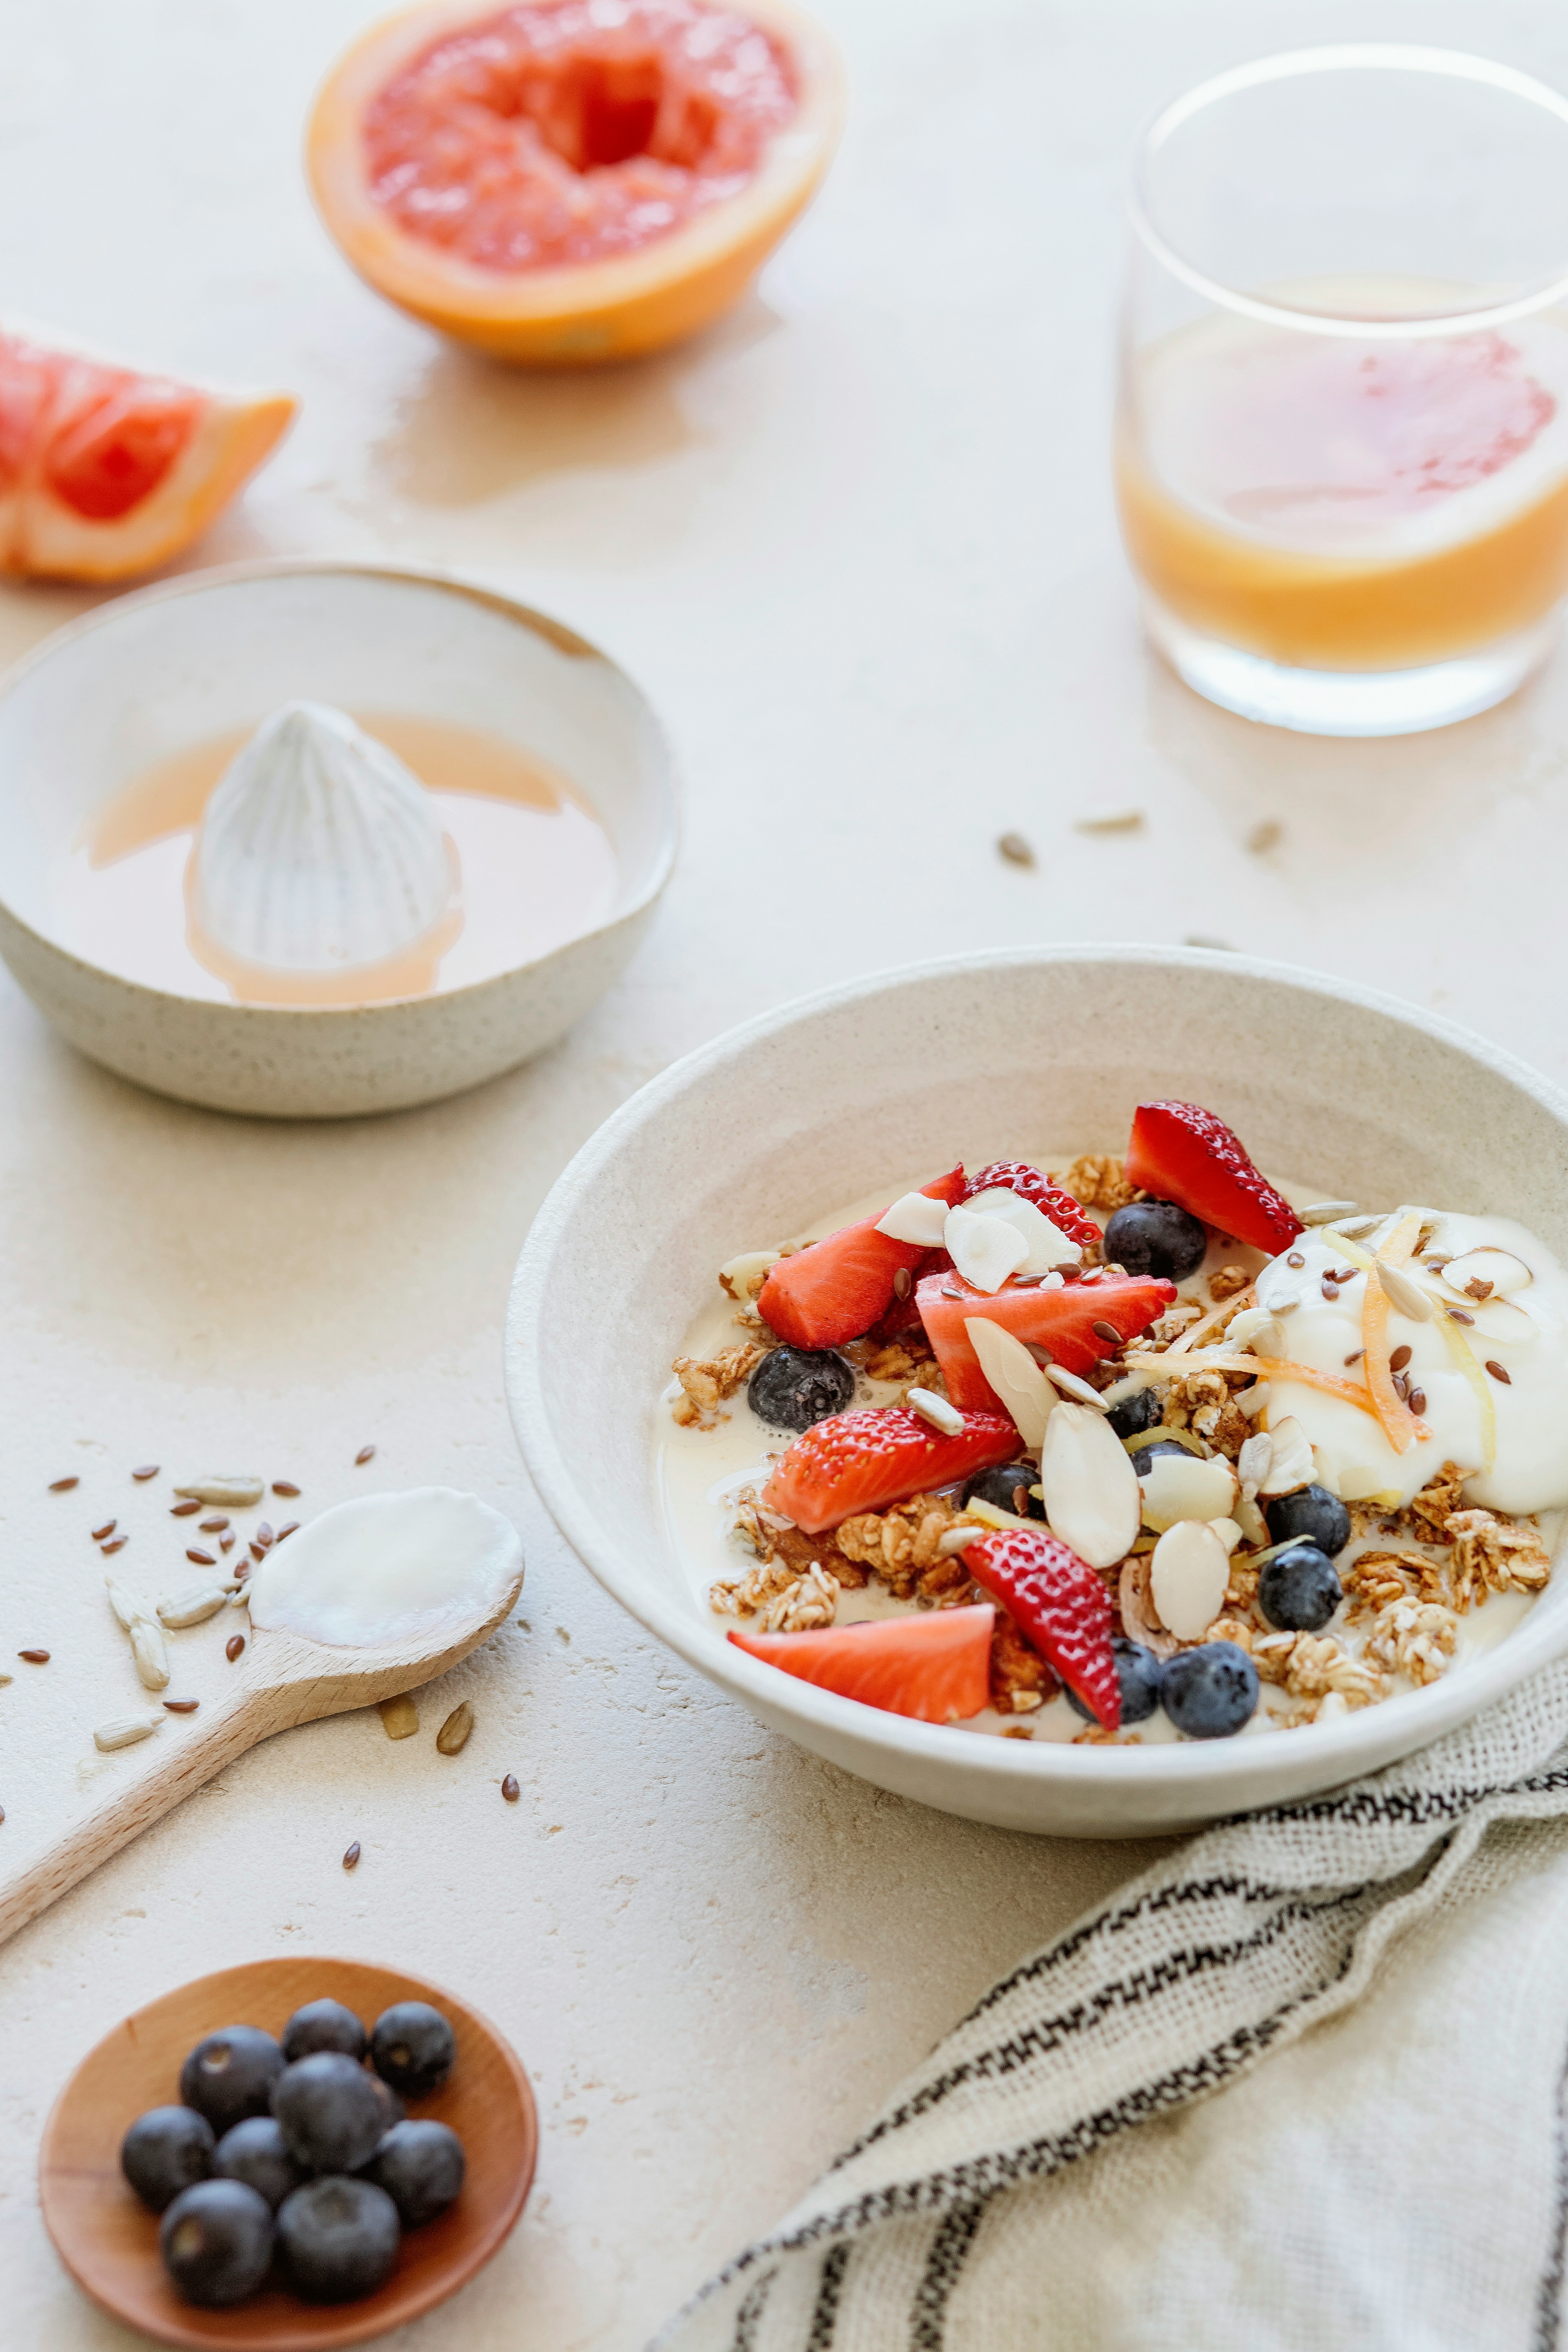 Завтрак без ошибок: врач назвал продукты, которые нельзя есть на голодный желудок 